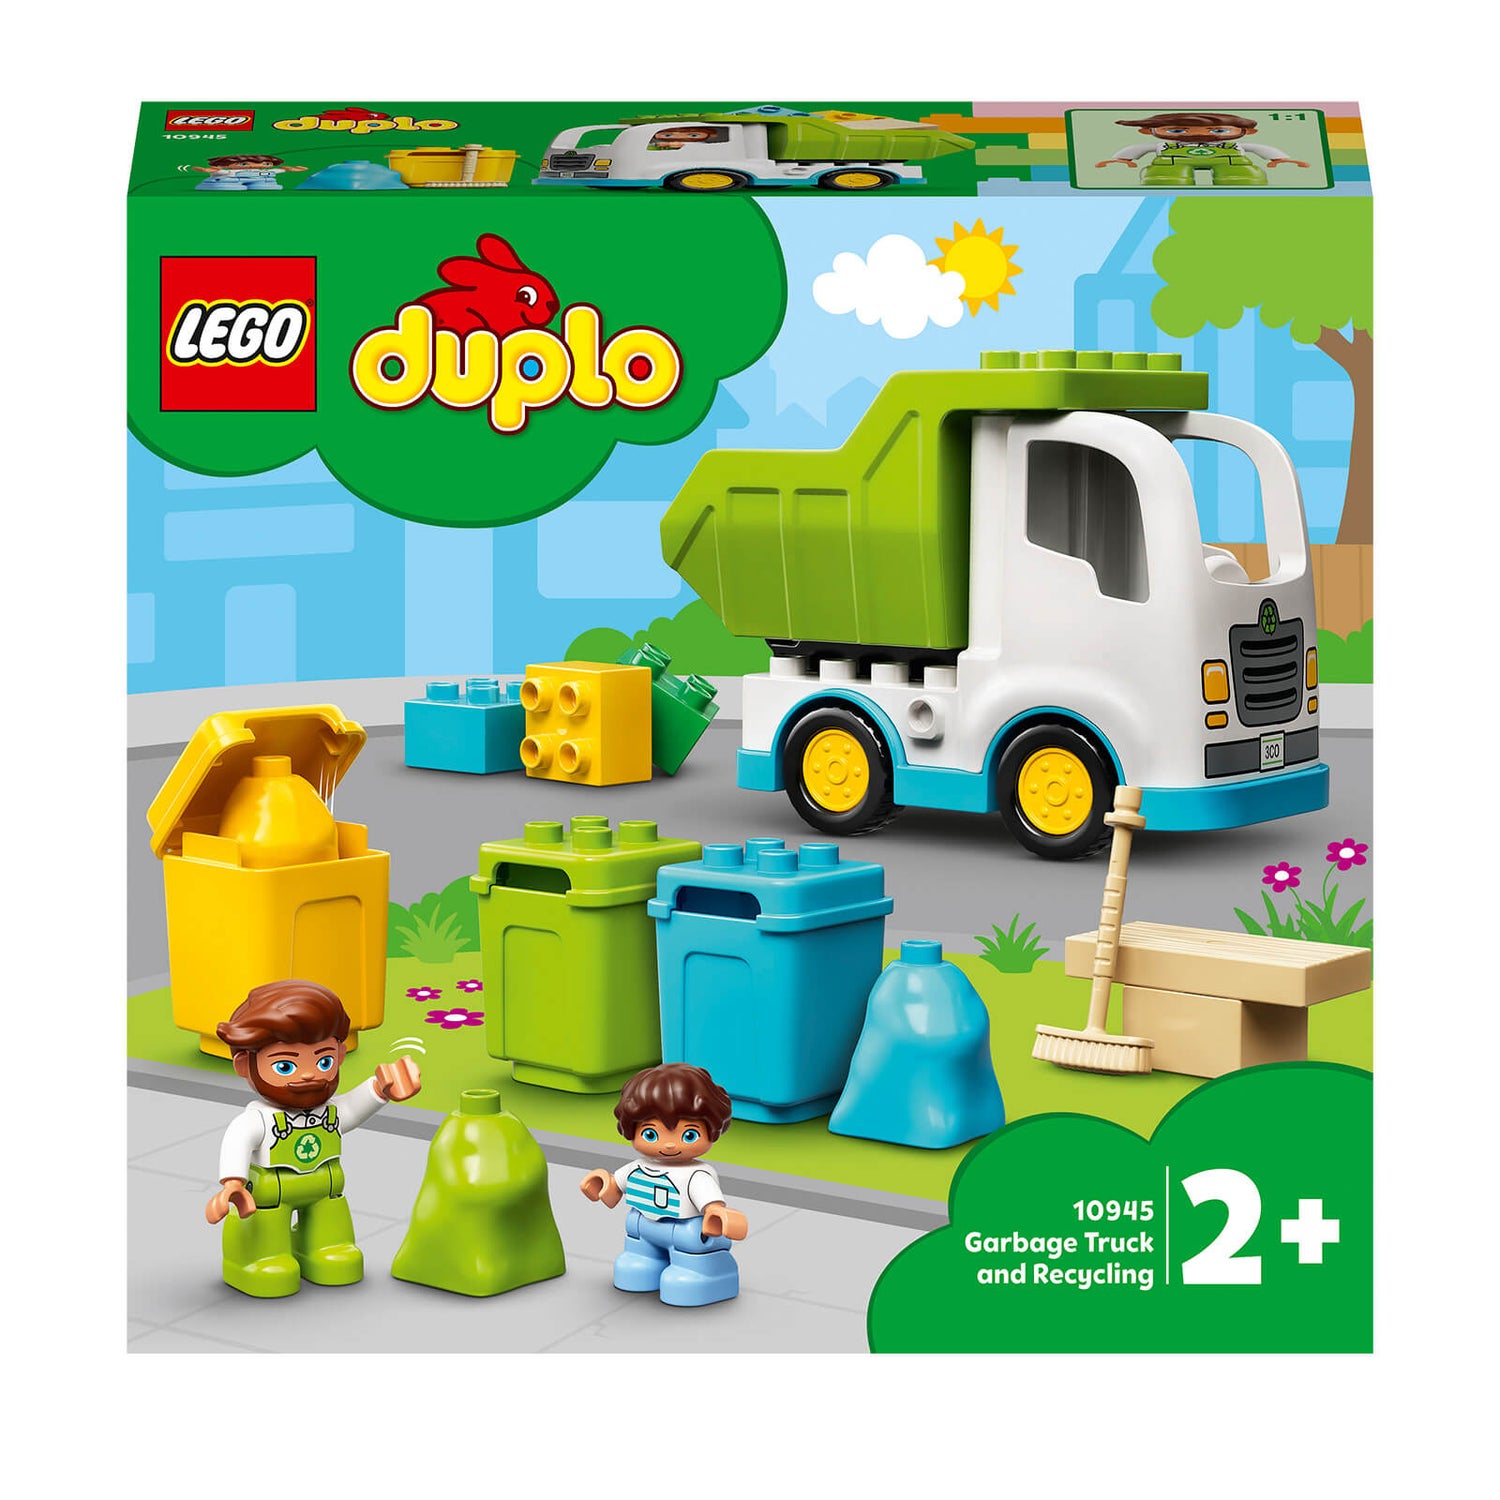 Saks Oberst Ren og skær LEGO DUPLO Town: Garbage Truck & Recycling Toddlers Toy (10945) Toys -  Zavvi US